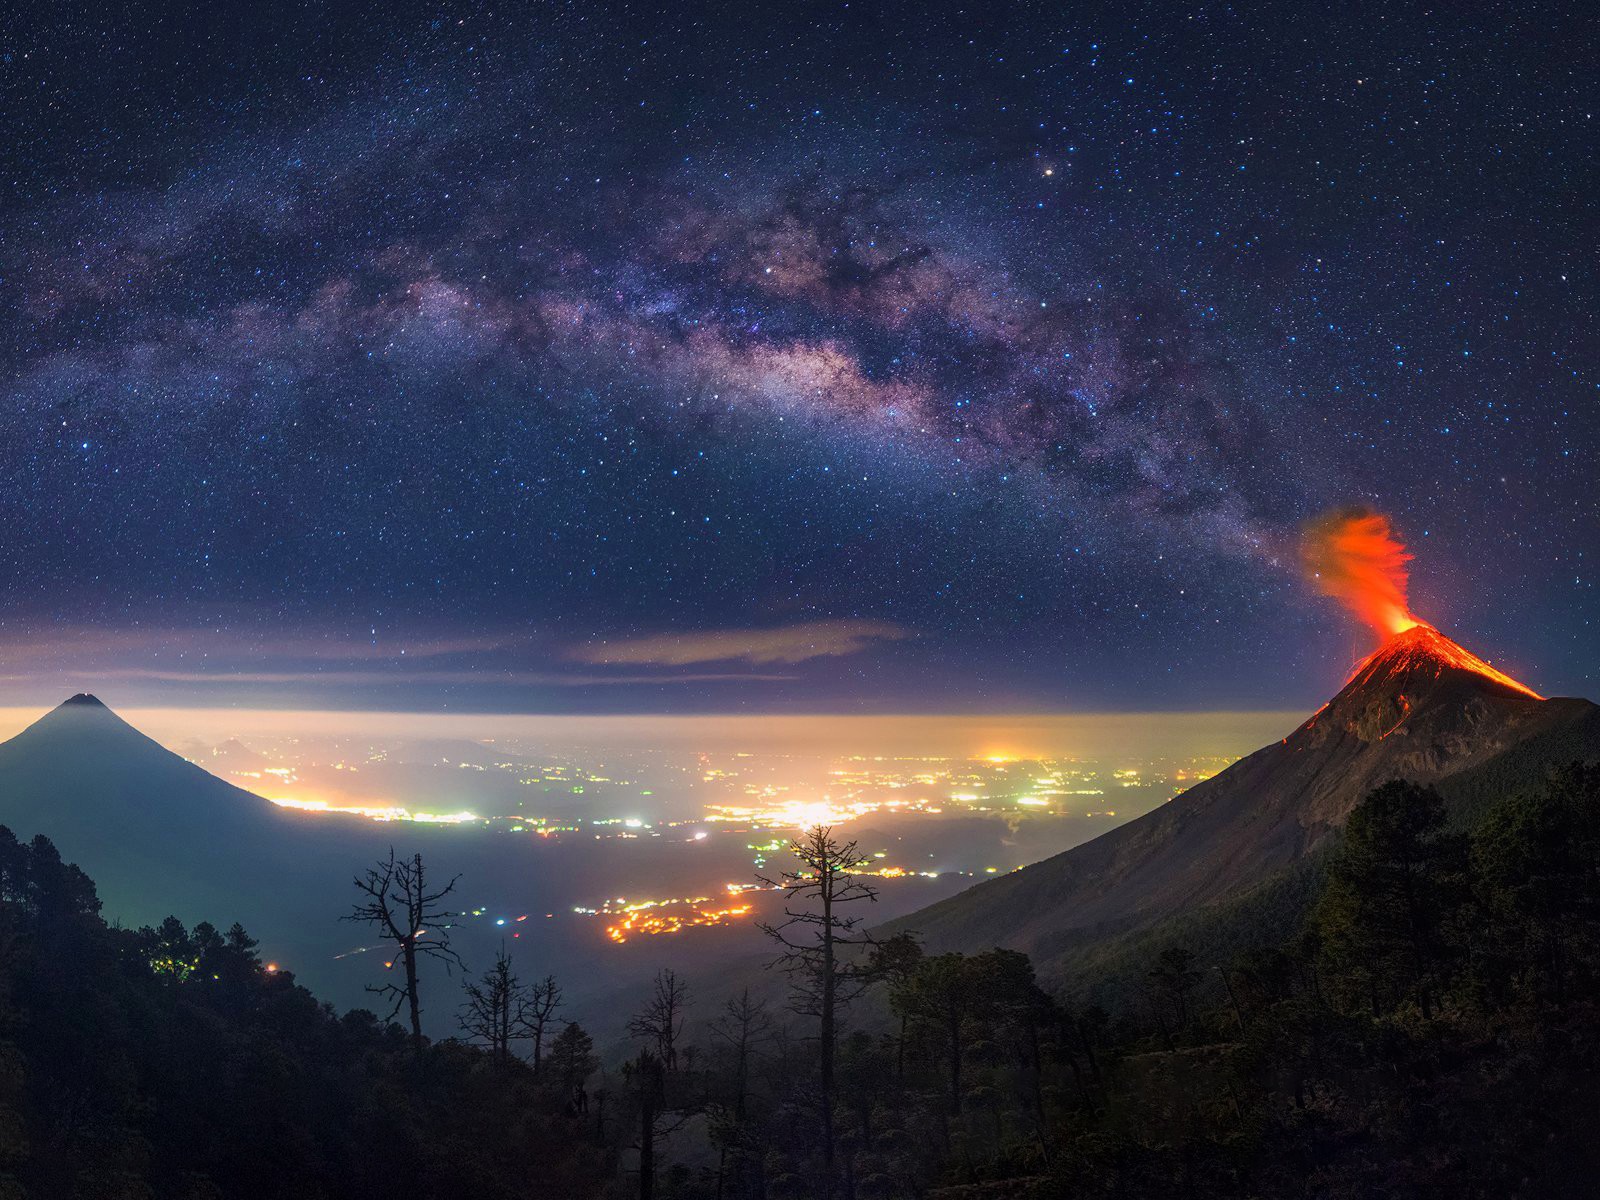 Извержение вулкана в Гватемале на фоне млечного пути 